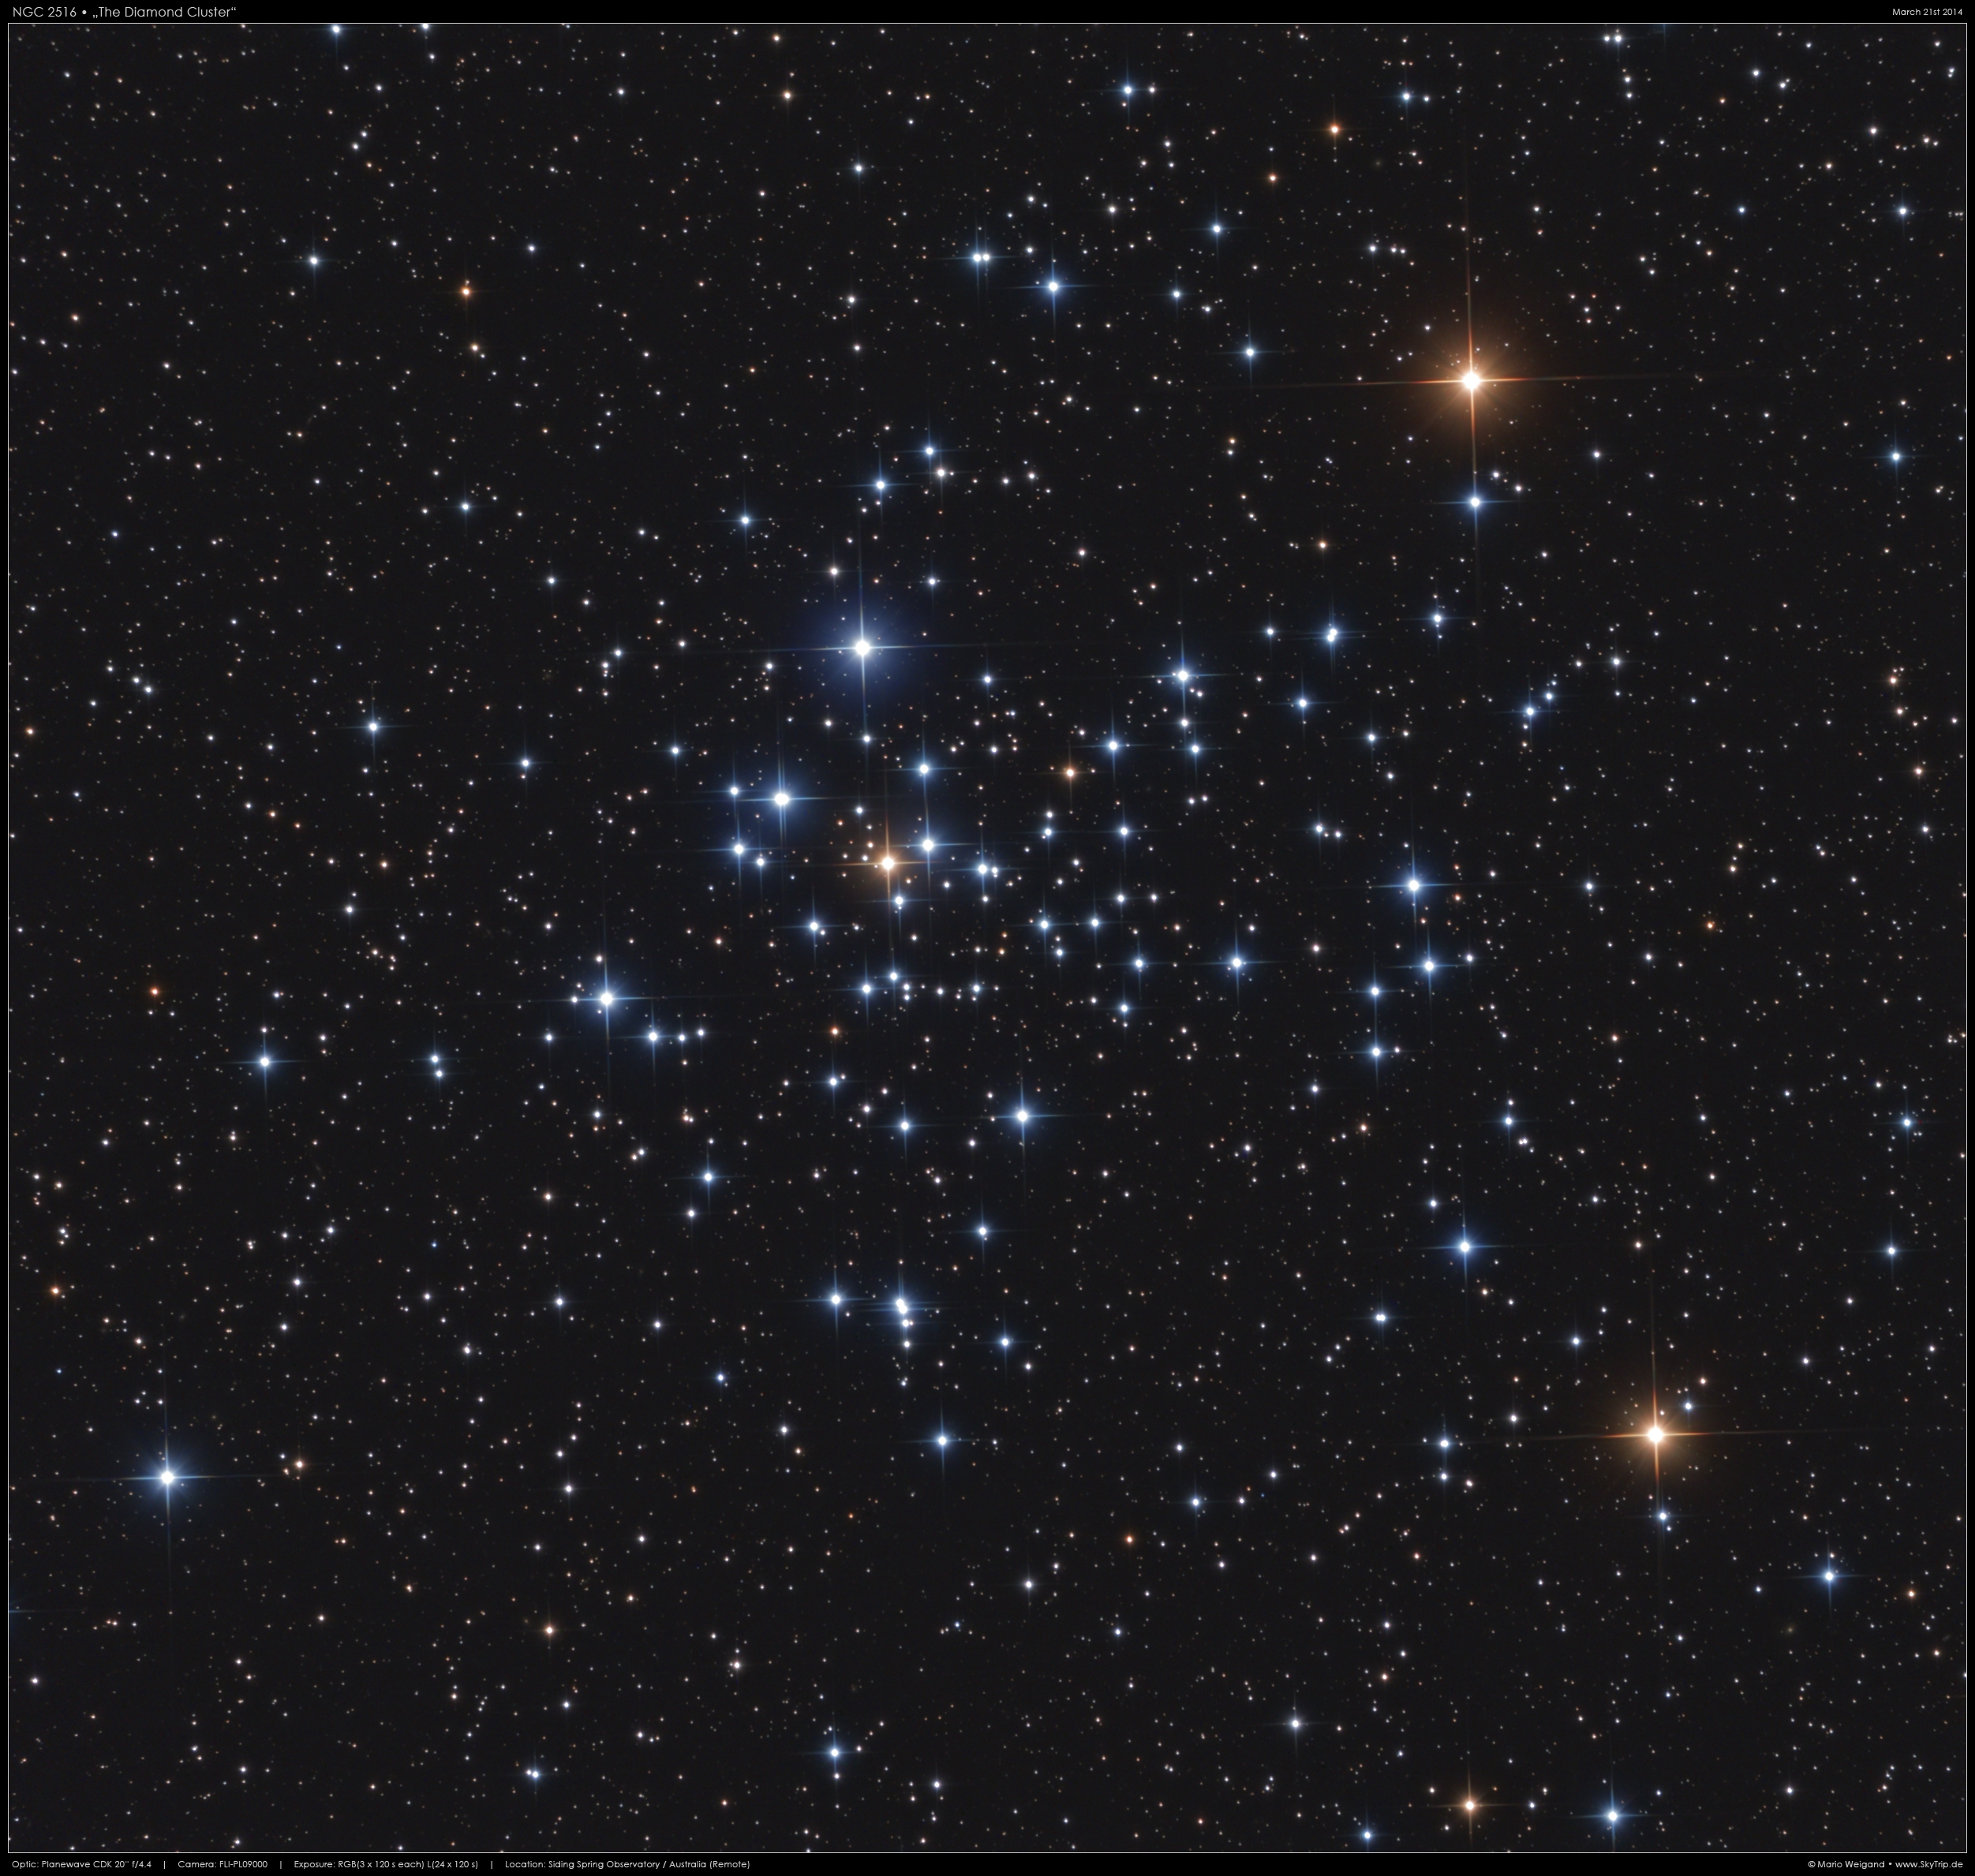 NGC 2516 in Carina